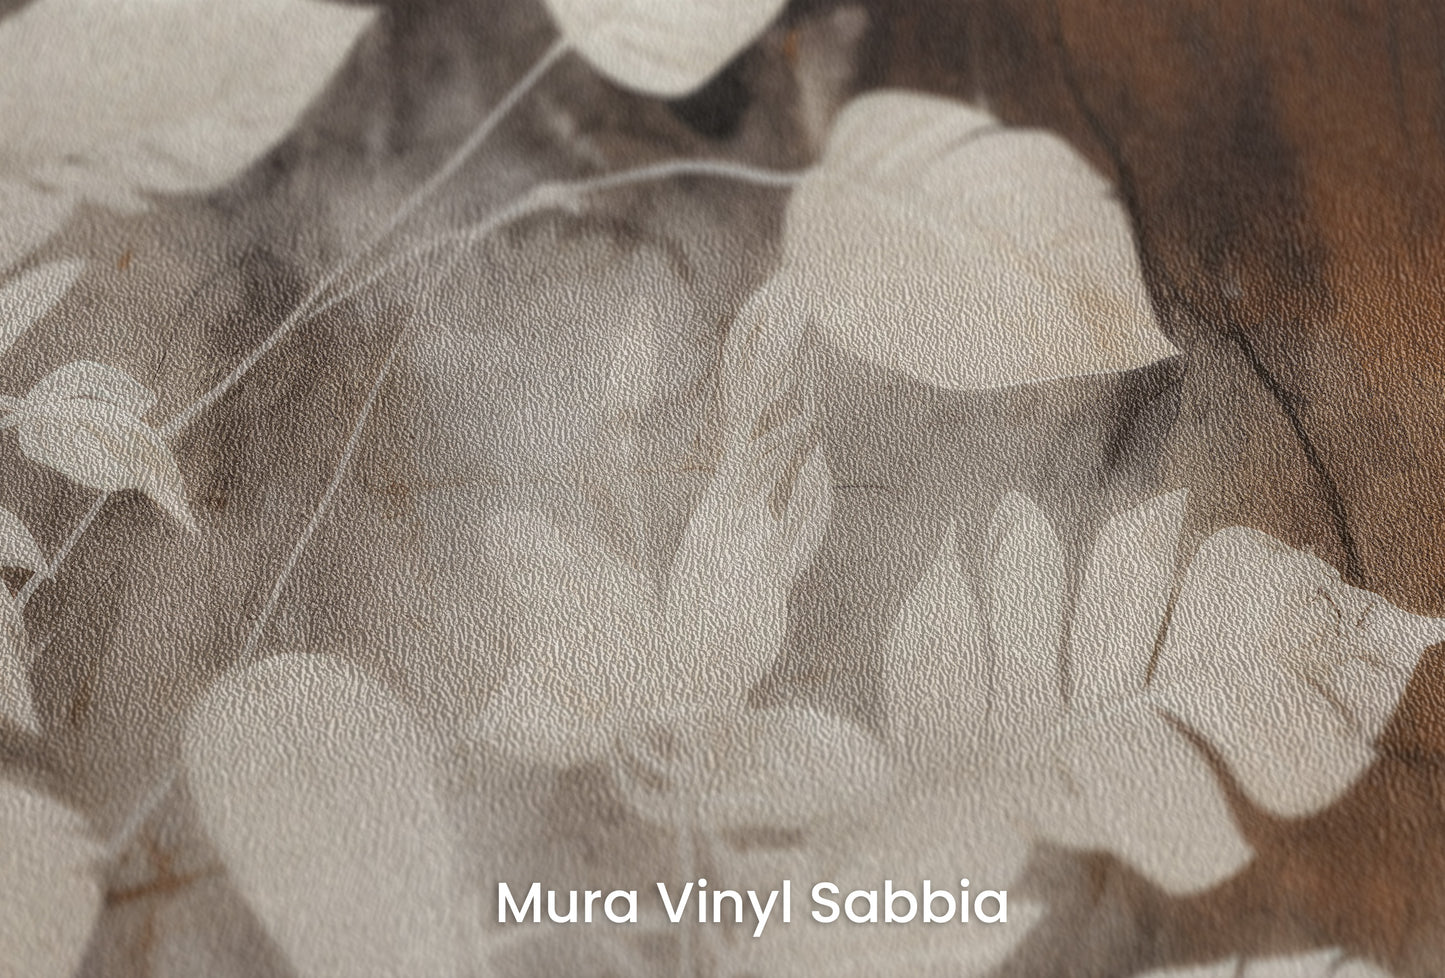 Zbliżenie na artystyczną fototapetę o nazwie Floral Haze na podłożu Mura Vinyl Sabbia struktura grubego ziarna piasku.